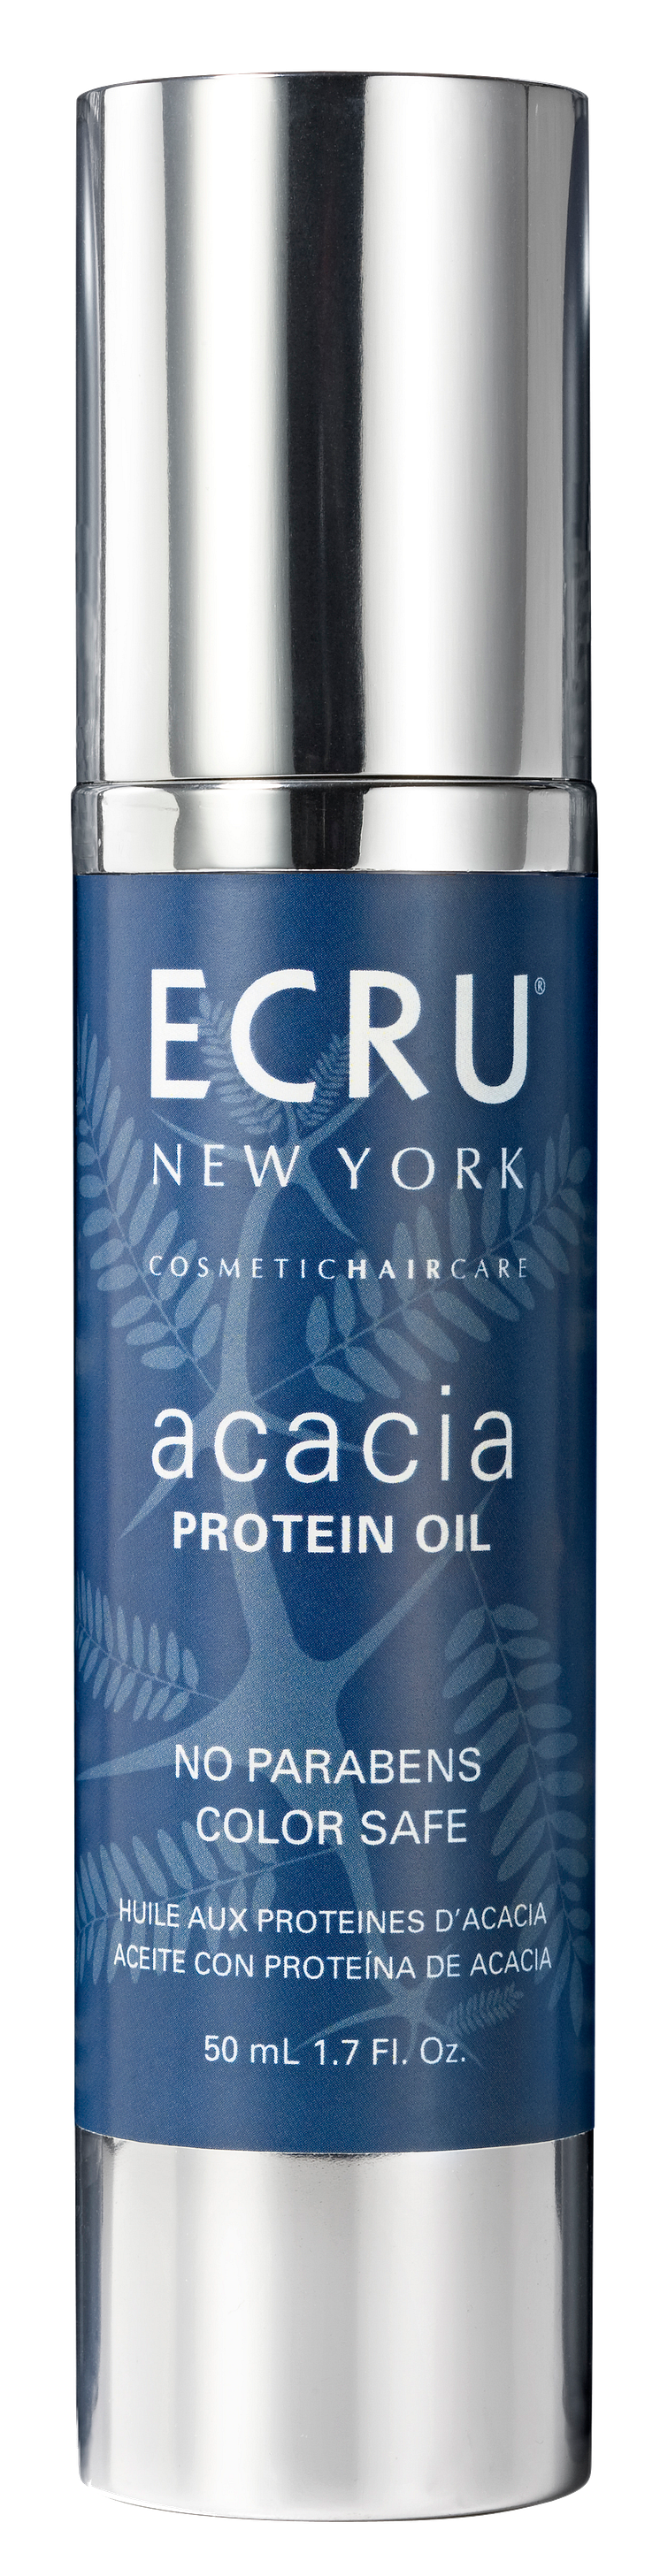 Acacia Protein Oil